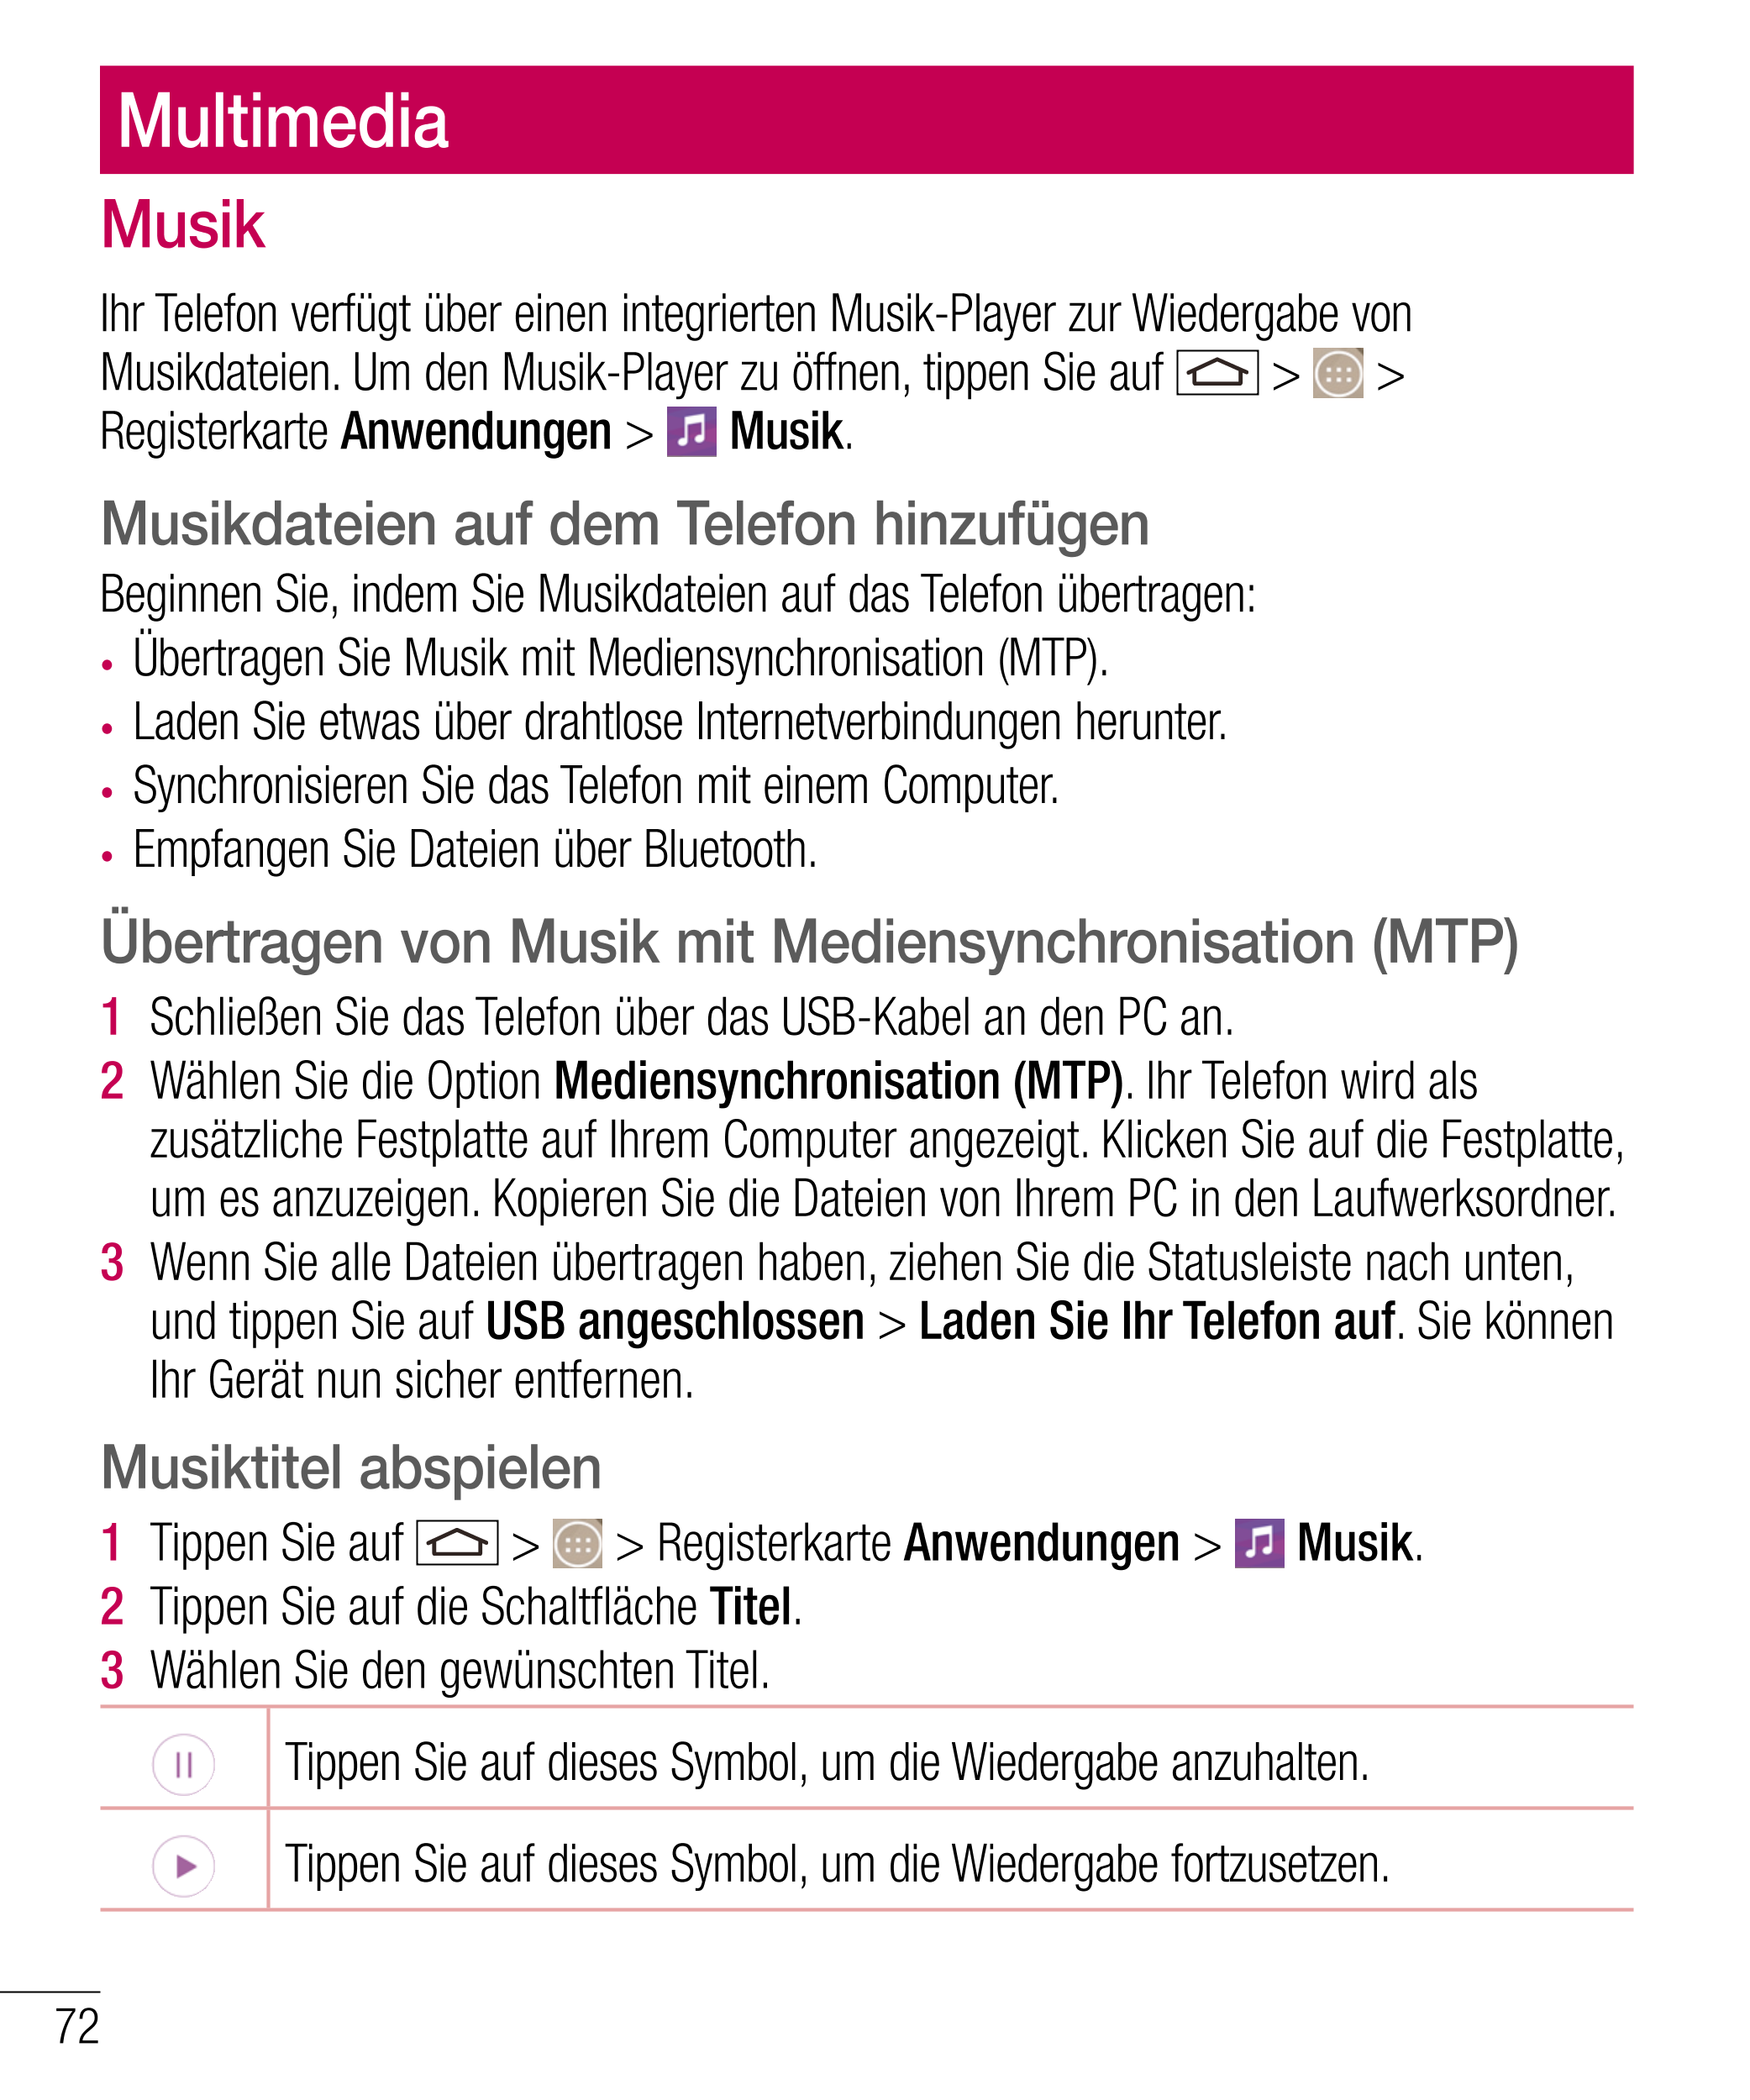 Multimedia
Musik
Ihr Telefon verfügt über einen integrierten Musik-Player zur Wiedergabe von 
Musikdateien. Um den Musik-Player 